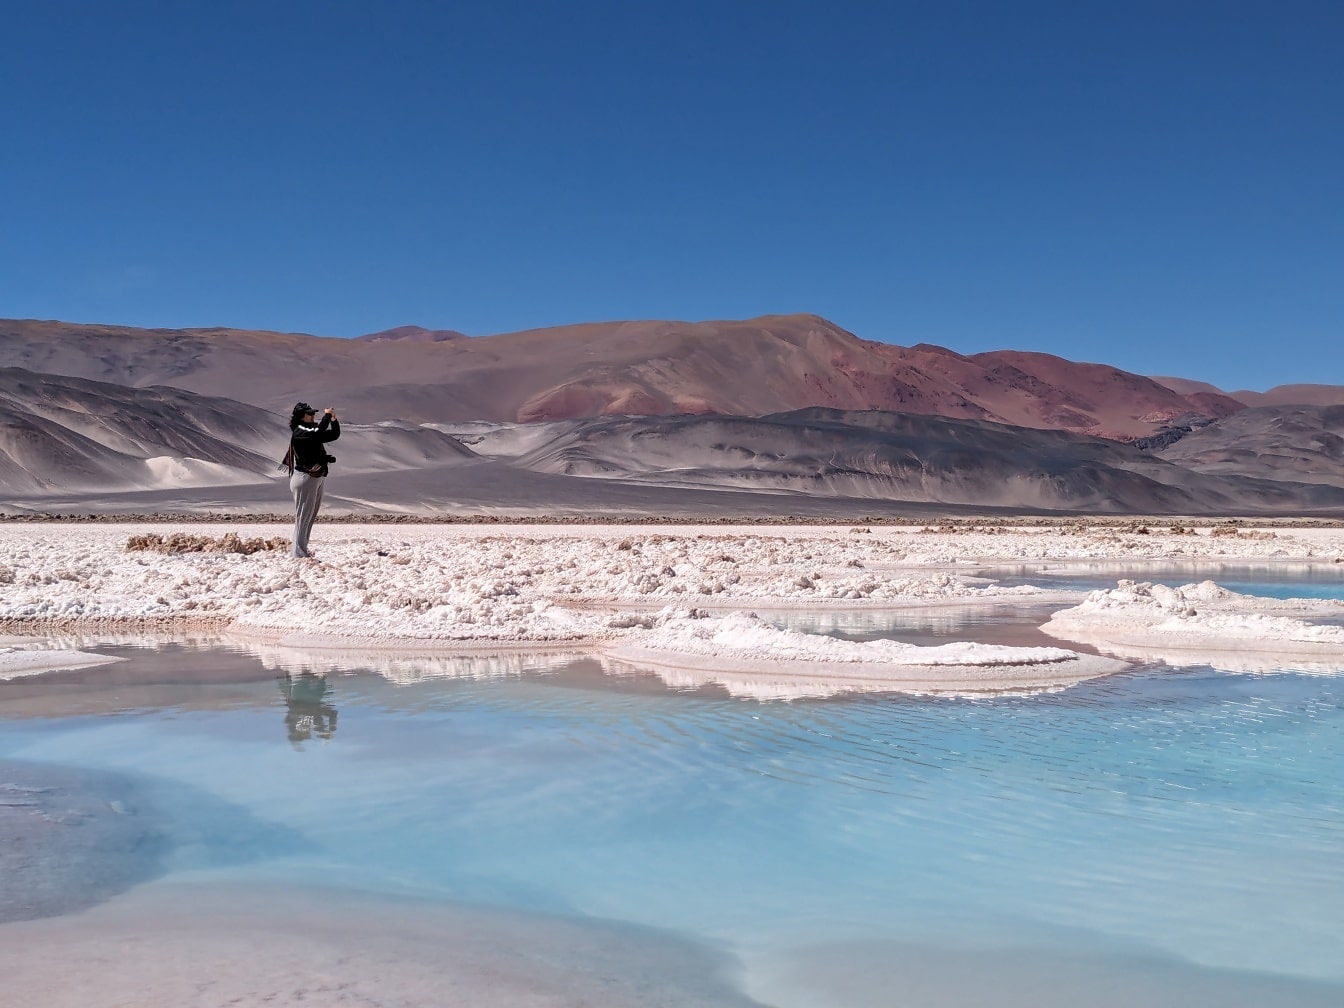 Τουρίστας στέκεται σε μια παραλία της αλυκής της ερήμου και φωτογραφίζει το τοπίο της όασης της ερήμου